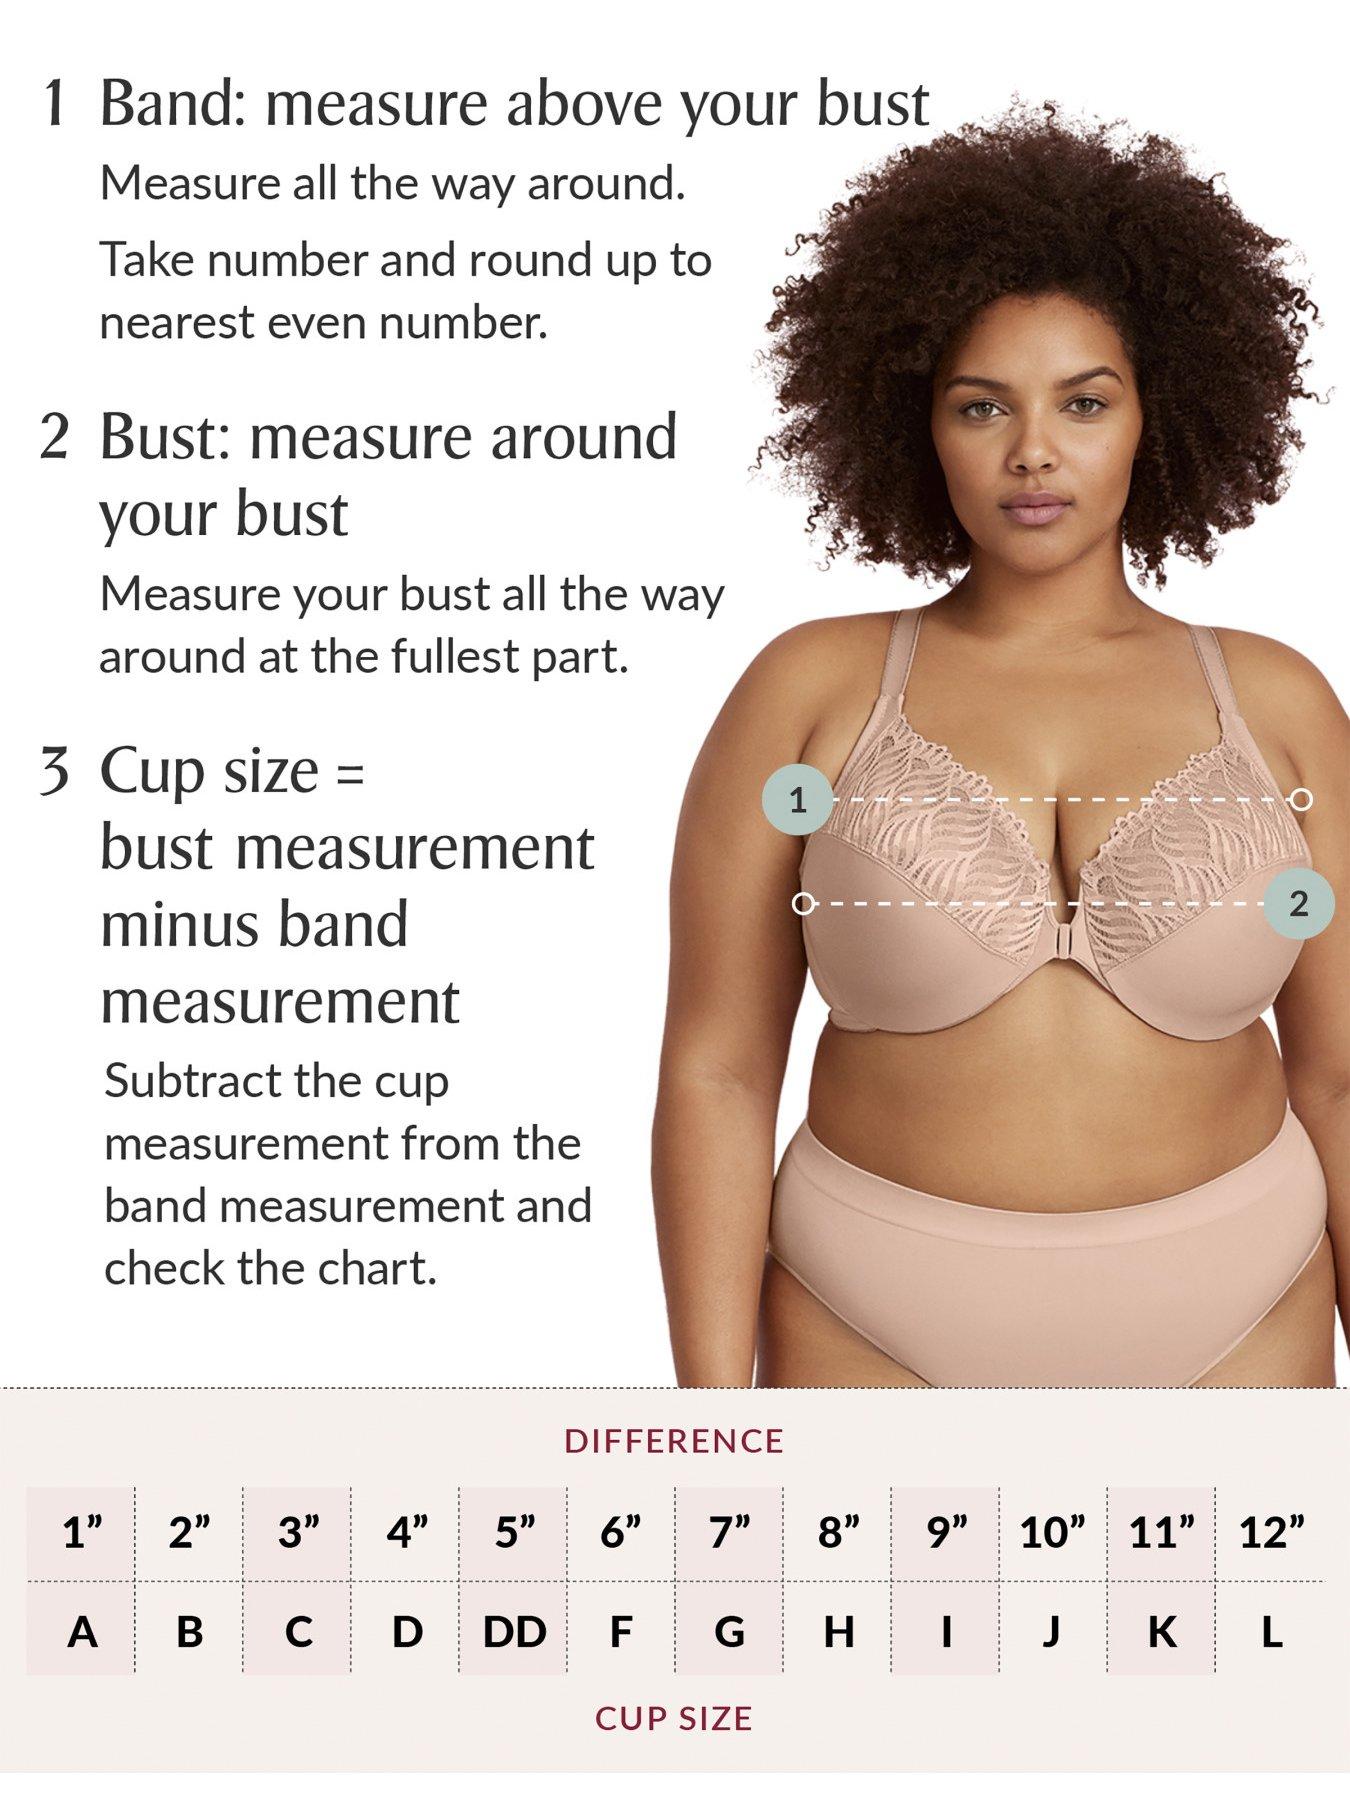 Woman breast size comparison B,C,D,E